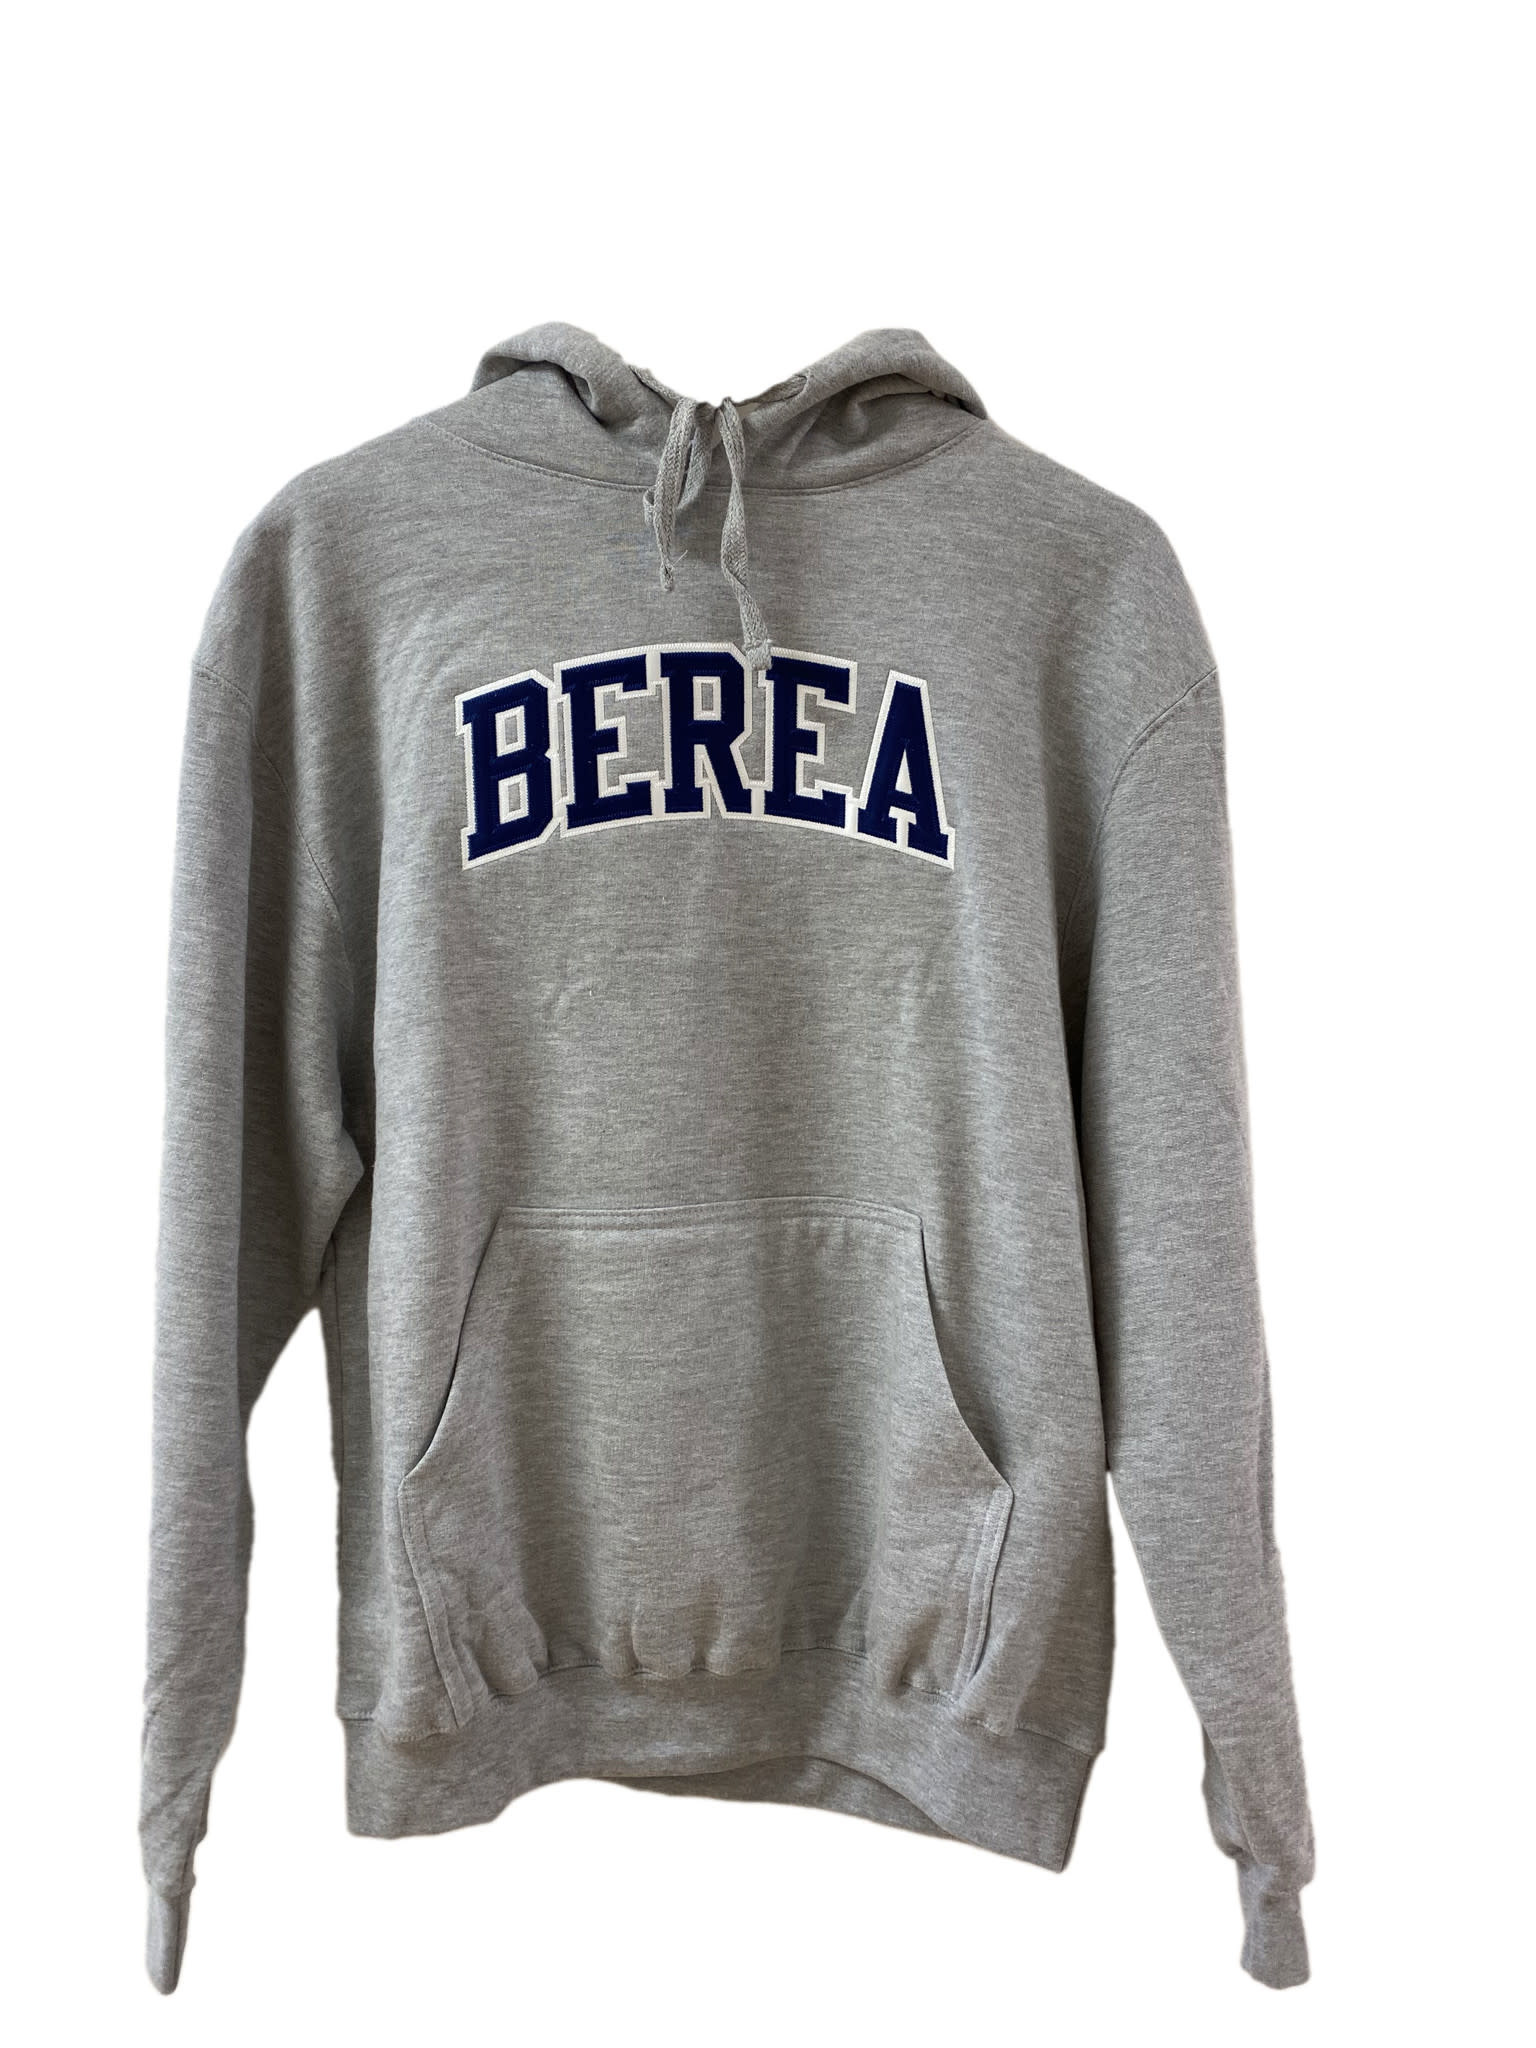 Berea Grey Fleece Hoodie-4